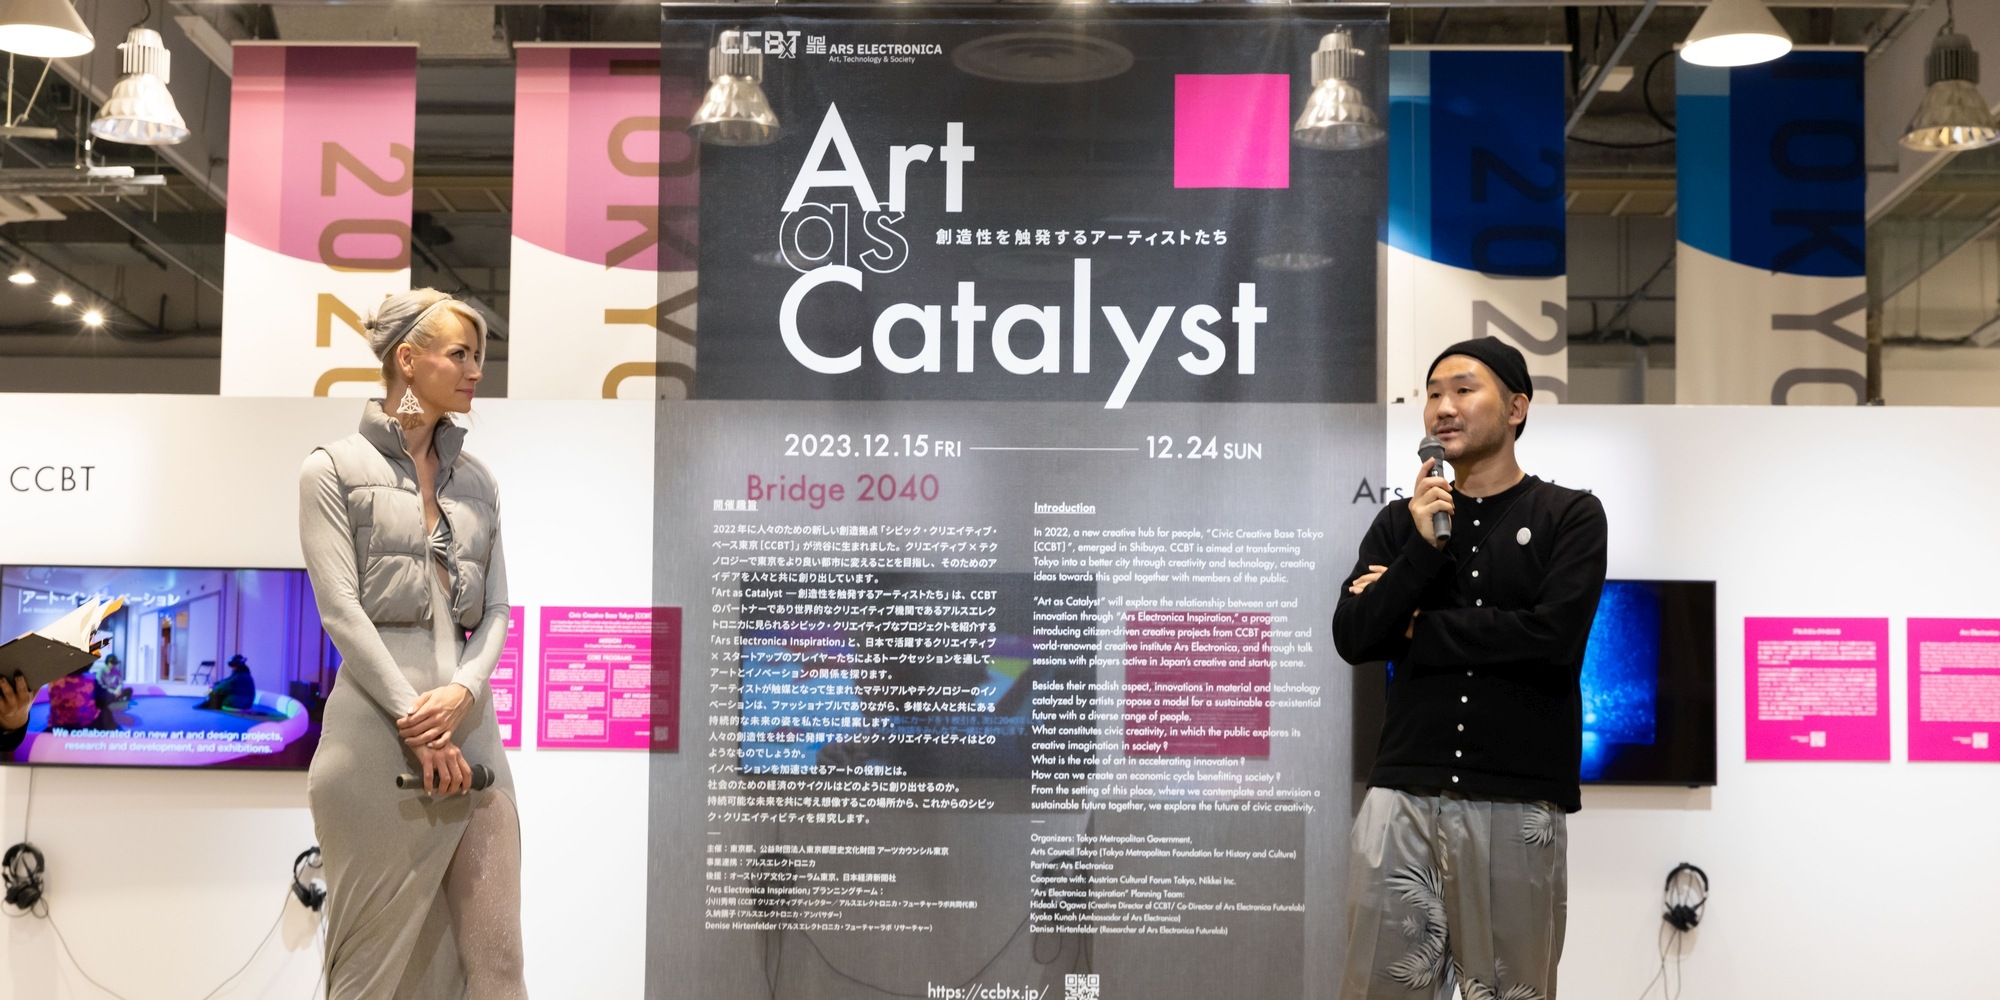 Artist Talk: Anouk Wipprecht, "Art as Catalyst" 2023